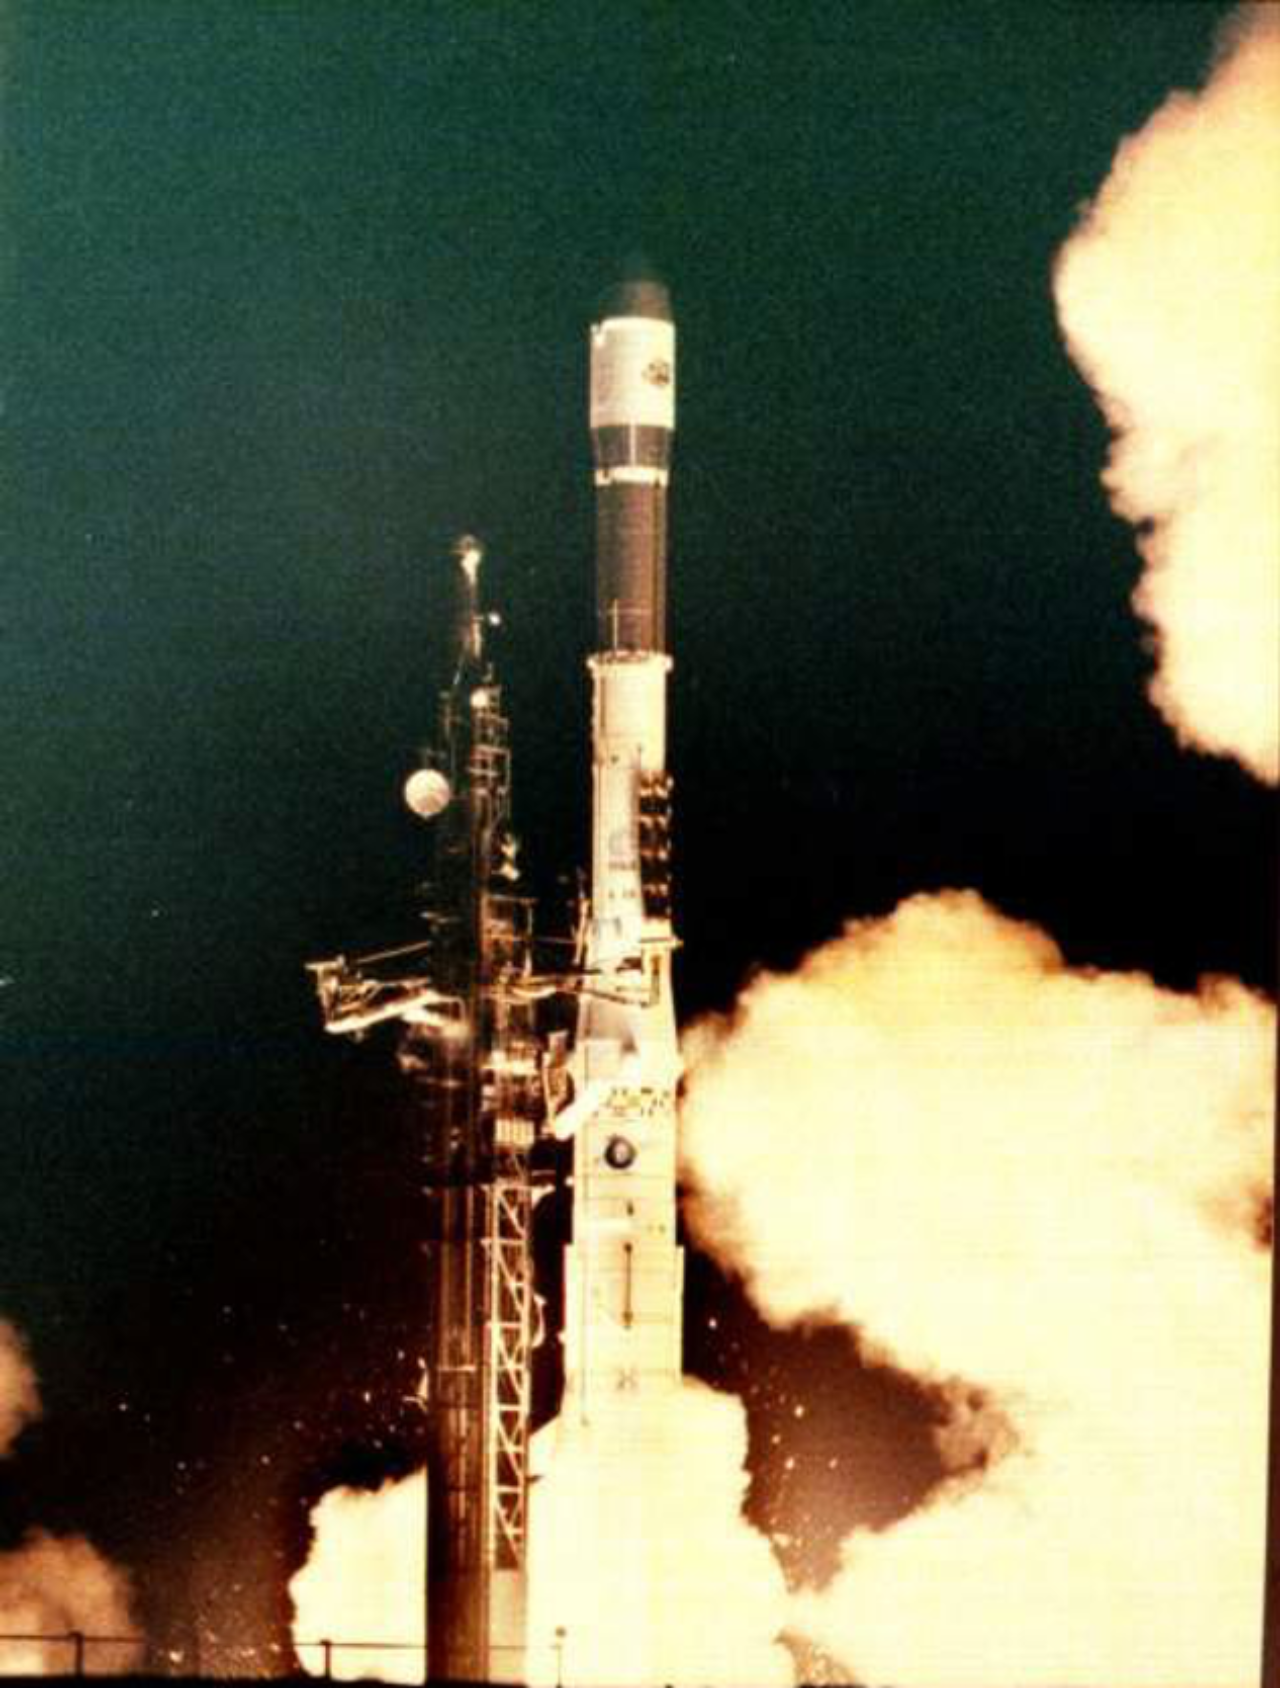 Nachdem fünf von sechs Flügen von Erfolg gekrönt waren, verabschiedete sich die Ariane 2 in den wohlverdienten Ruhestand. Bei ihrem letzten Start am 2. April 1989 um 2 Uhr 28 (UT) von der Startrampe ELA 1 in Kourou hatte die Ariane 2 den schwedischen Kommunikationssatelliten Tele-X im Gepäck und flog in Richtung geostationäre Transferbahn (GTO).